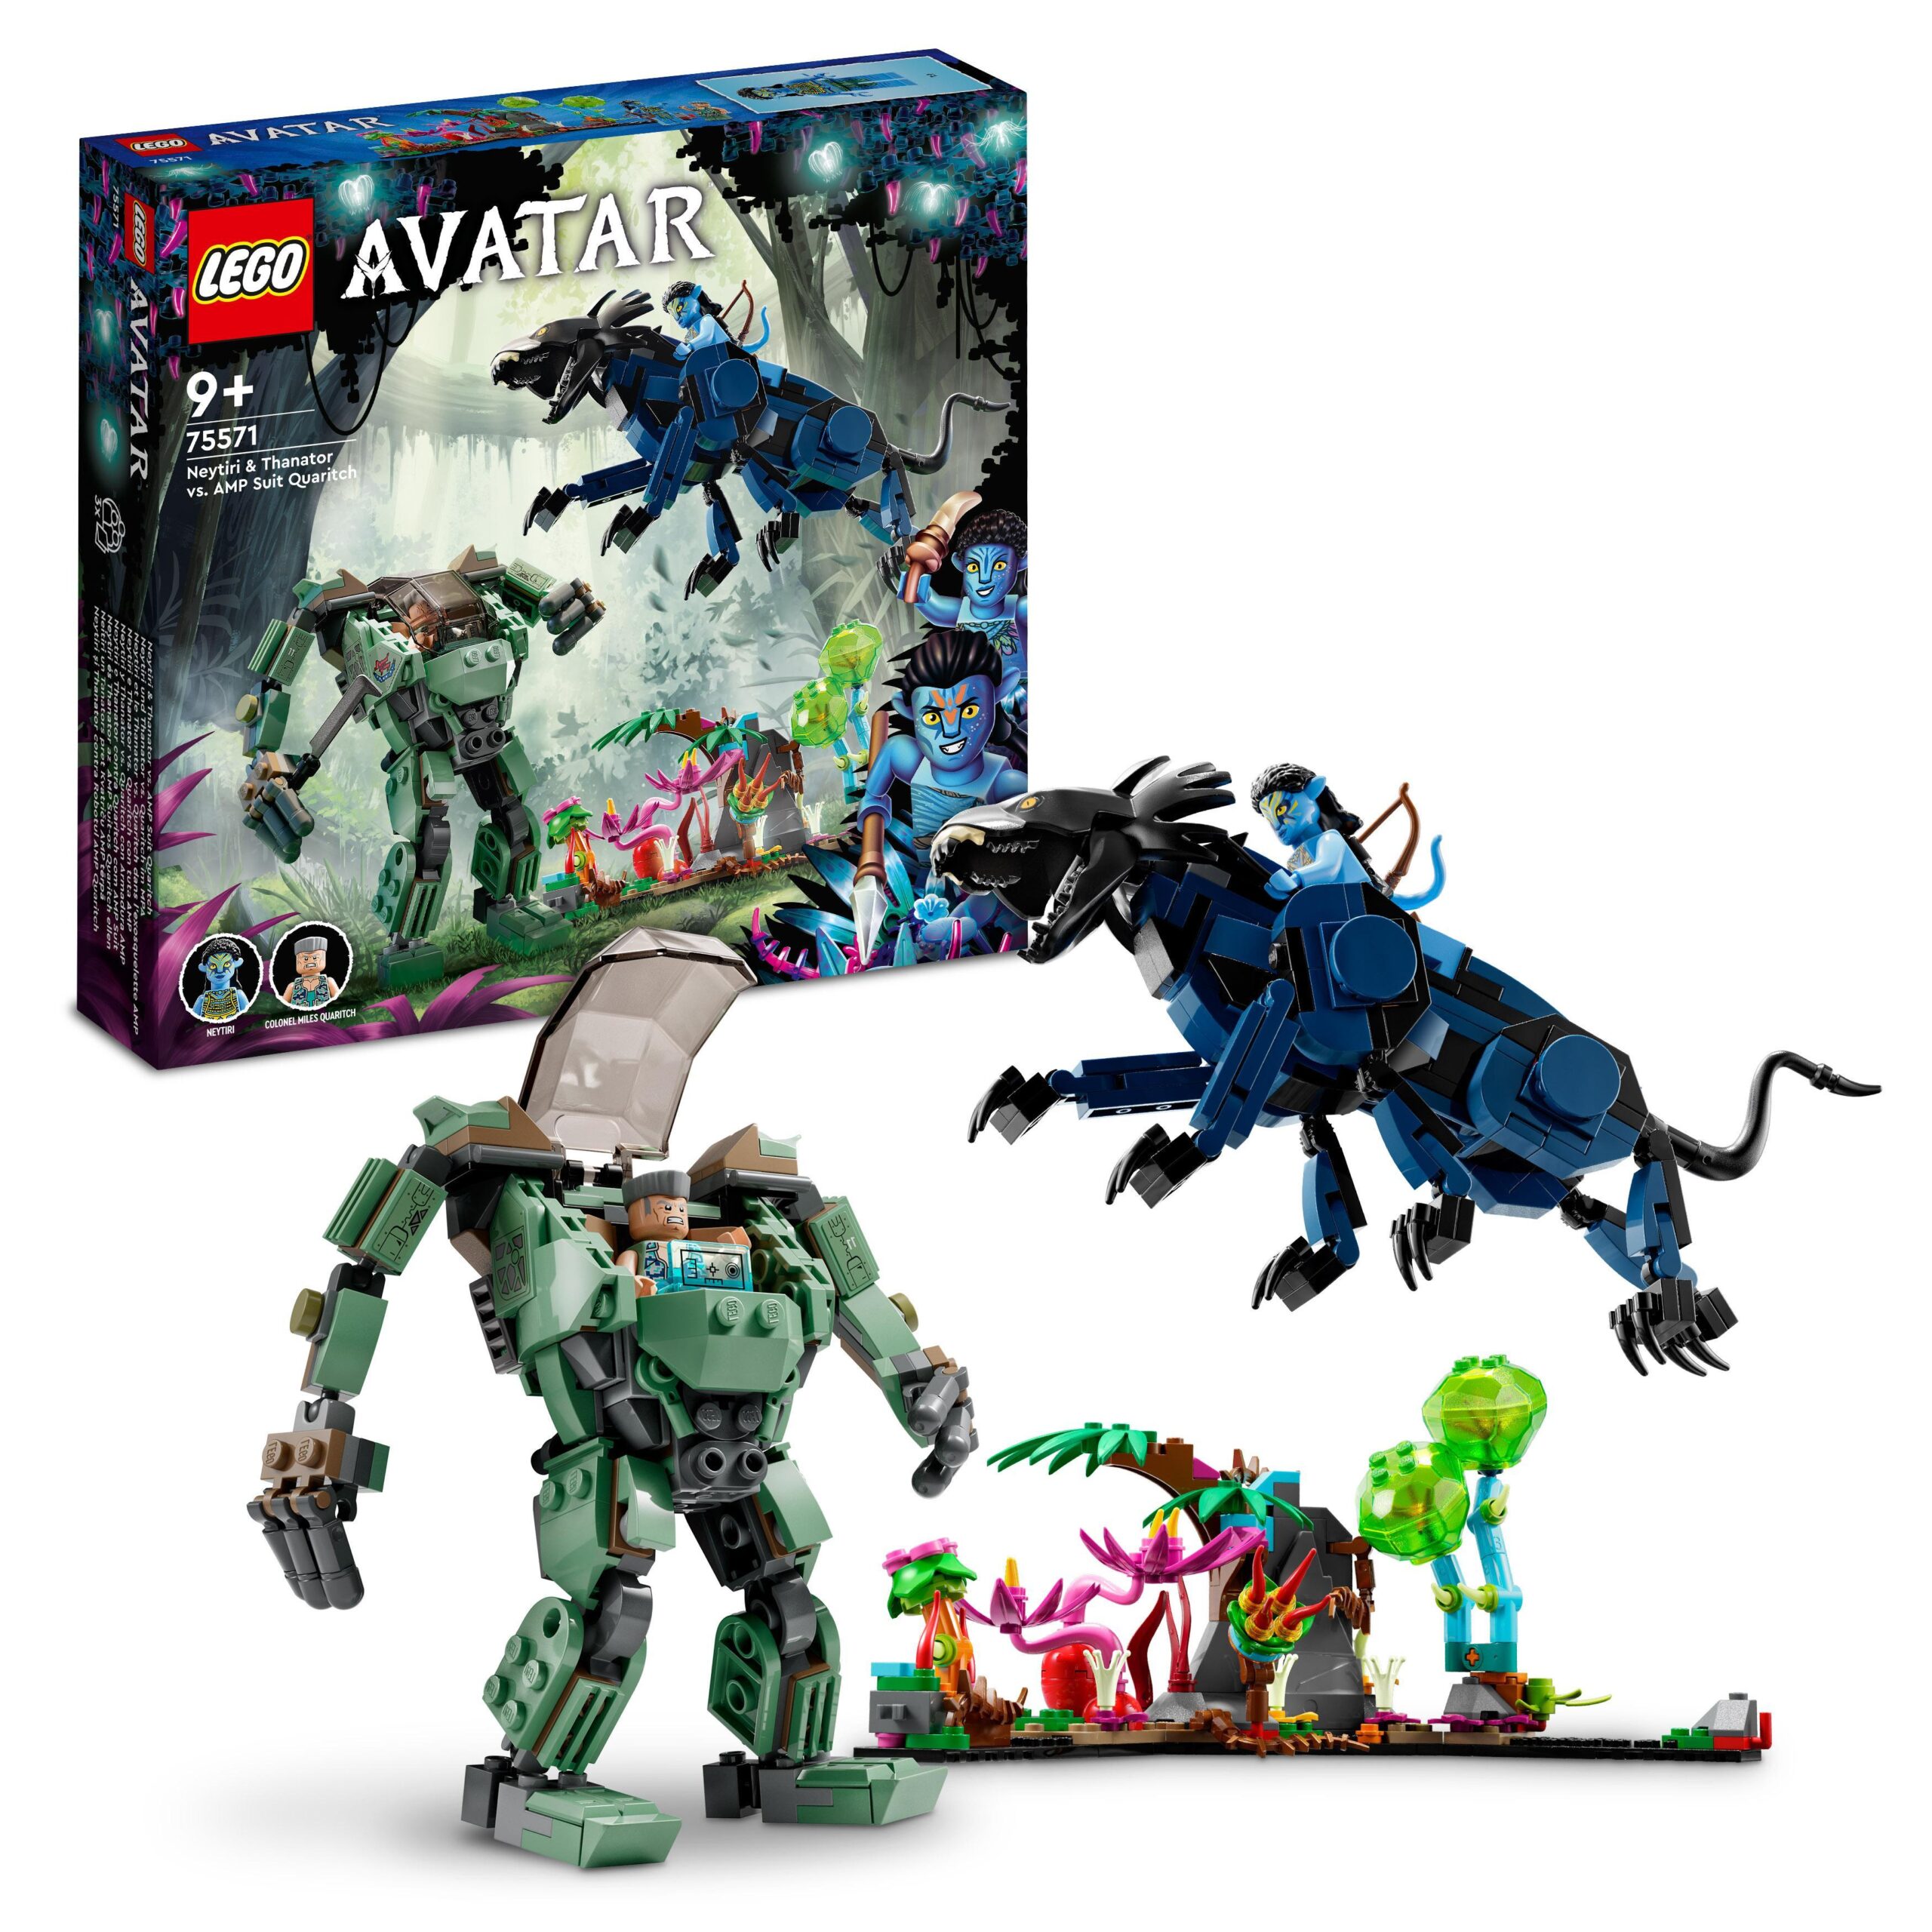 LEGO Avatar 75571 Neytiri e Thanator vs. Quaritch con Tuta AMP, Modellini di Animale e Mech - LEGO